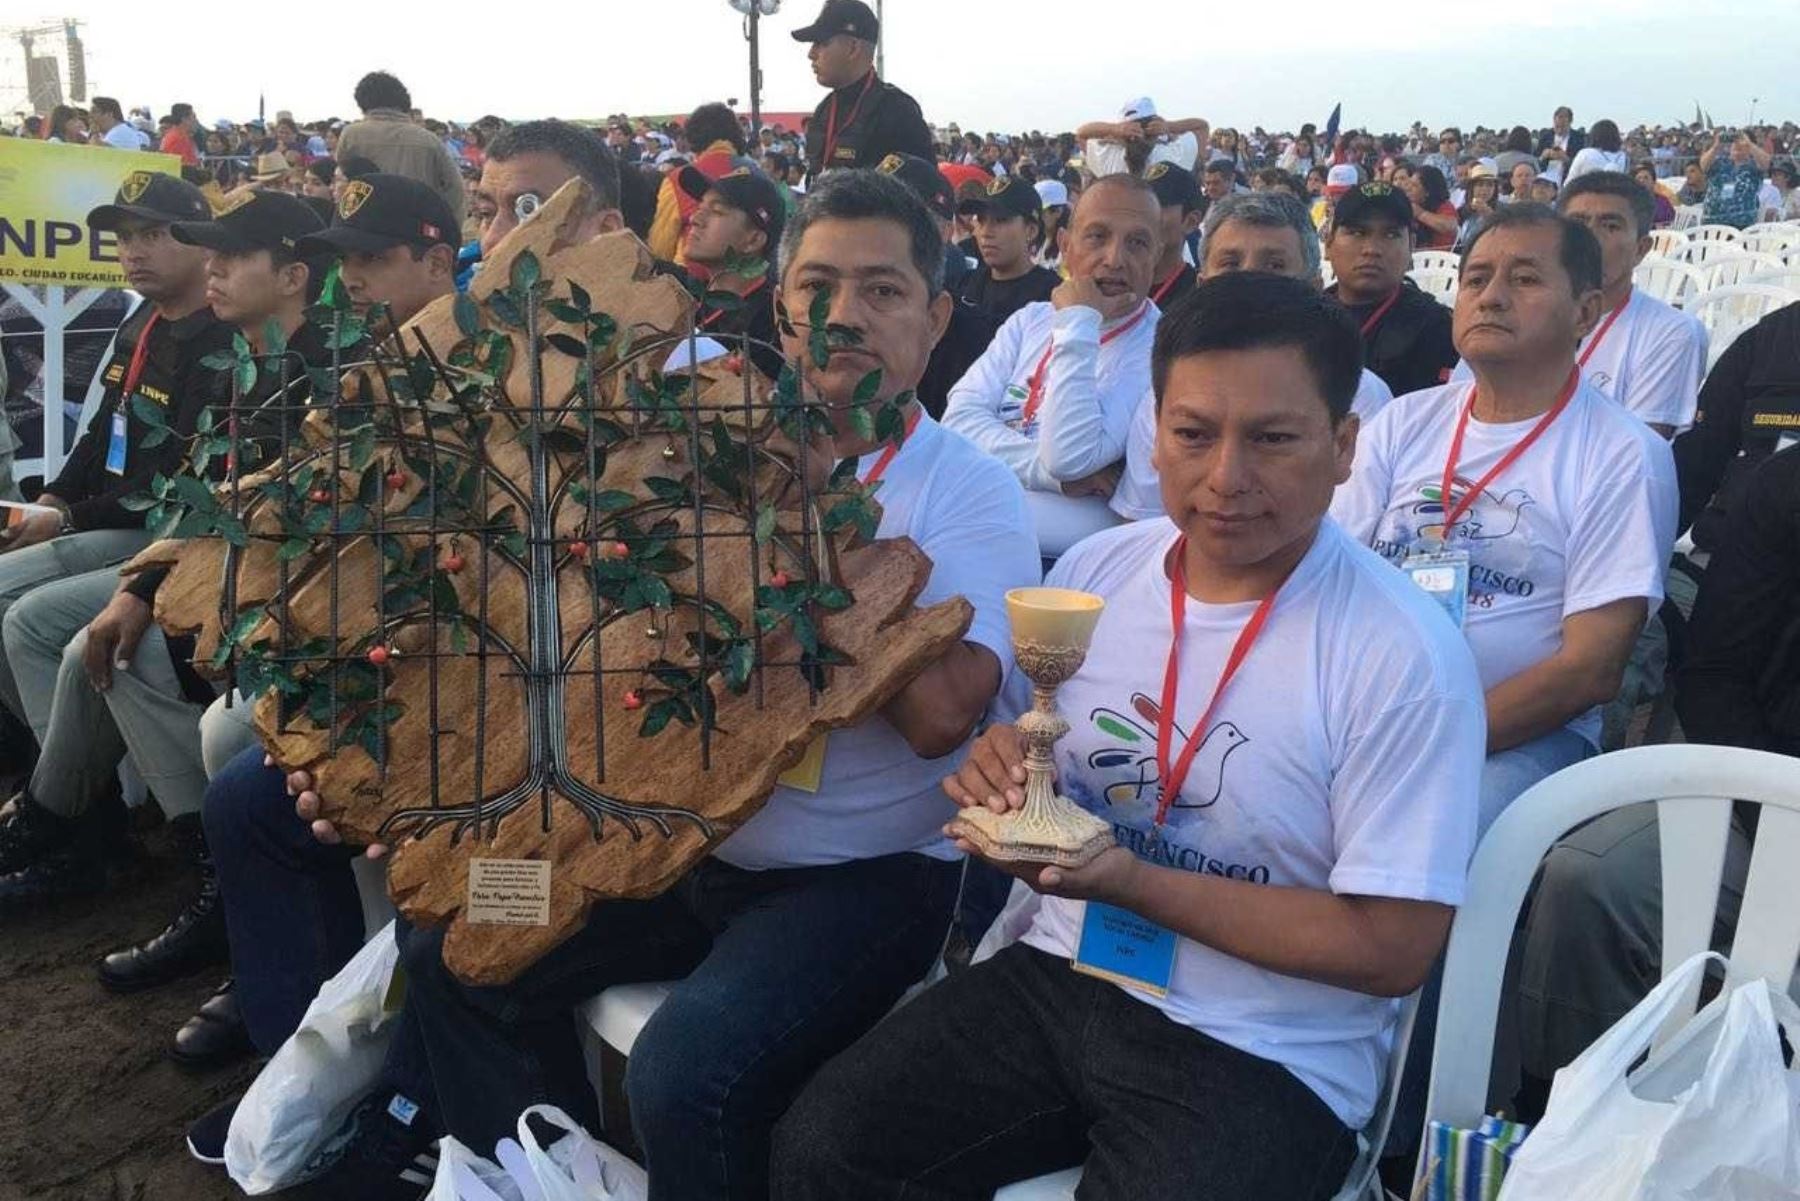 Una delegación de siete internos del penal de Trujillo participó de la celebración eucarística oficiada hoy por el Papa Francisco en la explanada de la playa Huanchaco, donde participaron miles de fieles de La Libertad y de otras regiones del Perú.